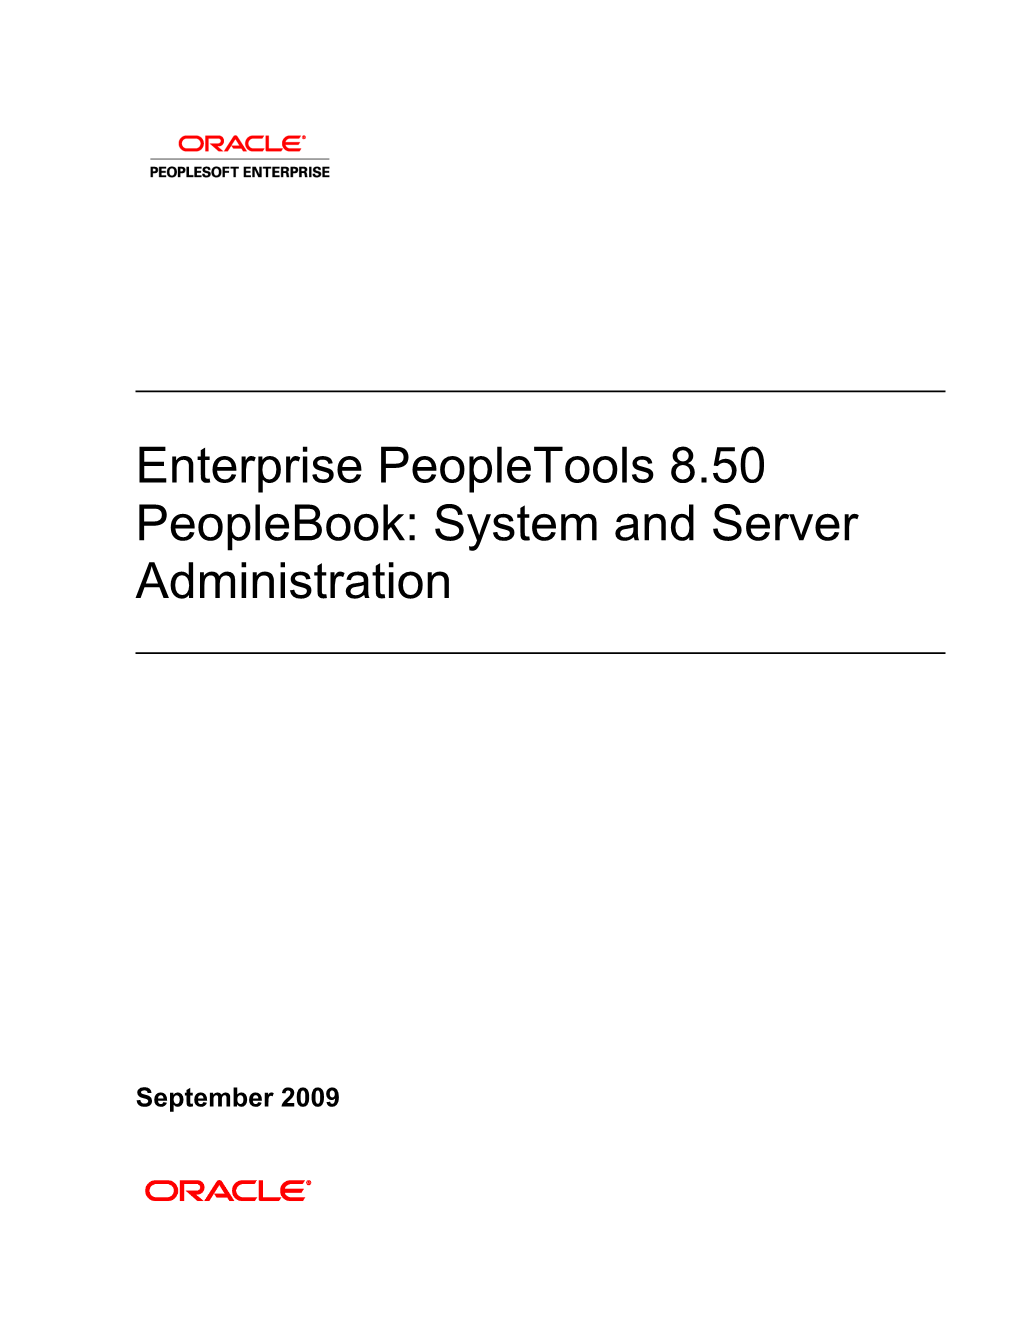 Enterprise Peopletools 8.50 Peoplebook: System and Server Administration